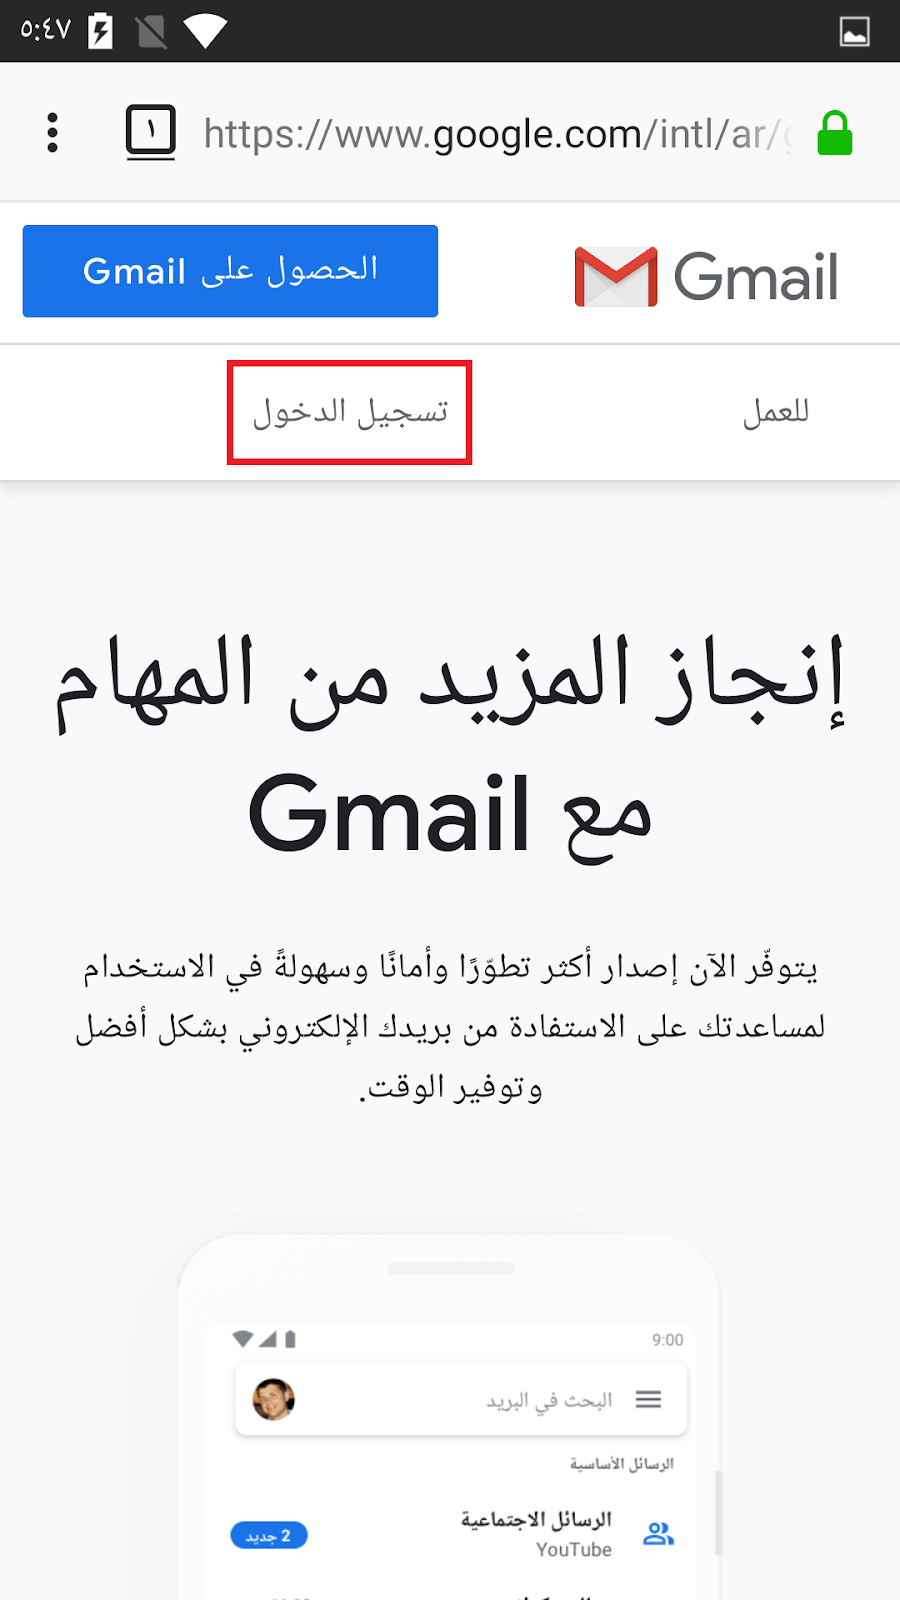 انشاء حساب جيميل gmail وشرح خطوات التسجيل بالصور